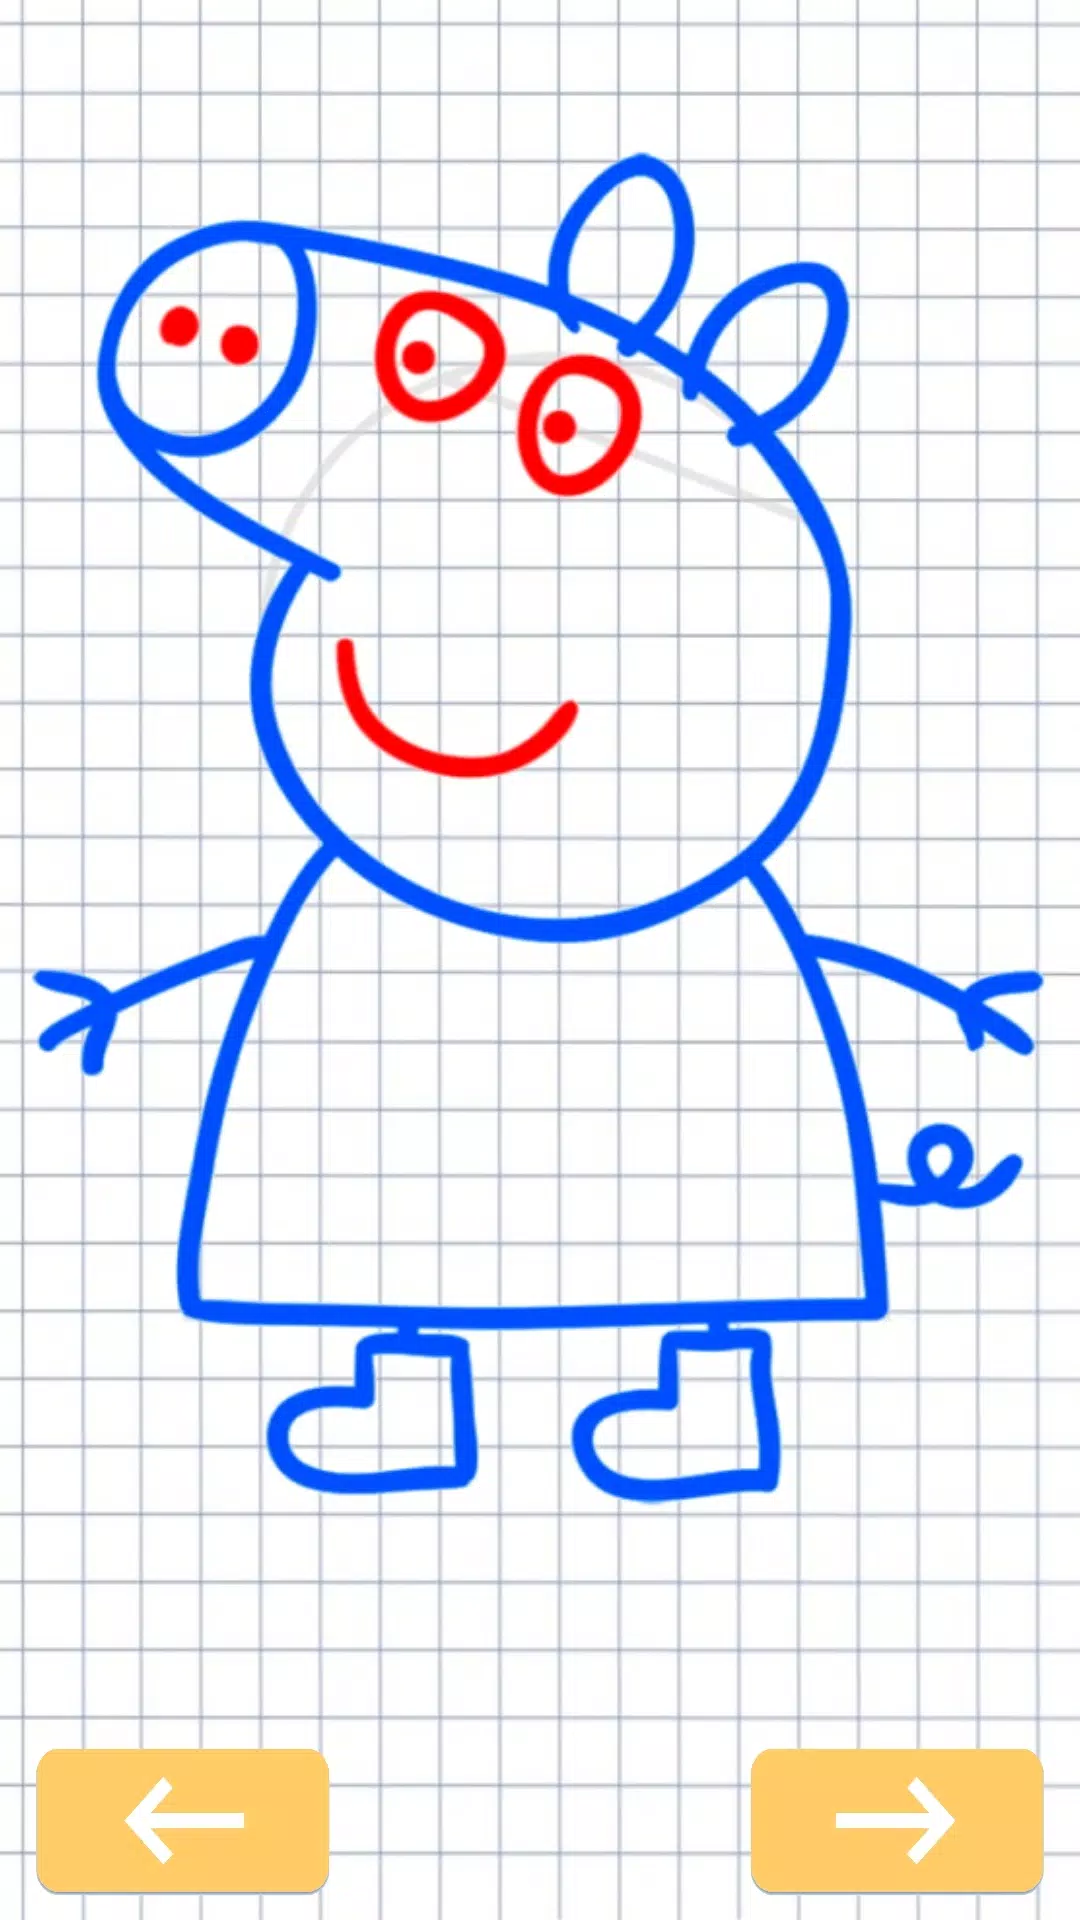 Desenhos para Desenhar Peppa Pig 4